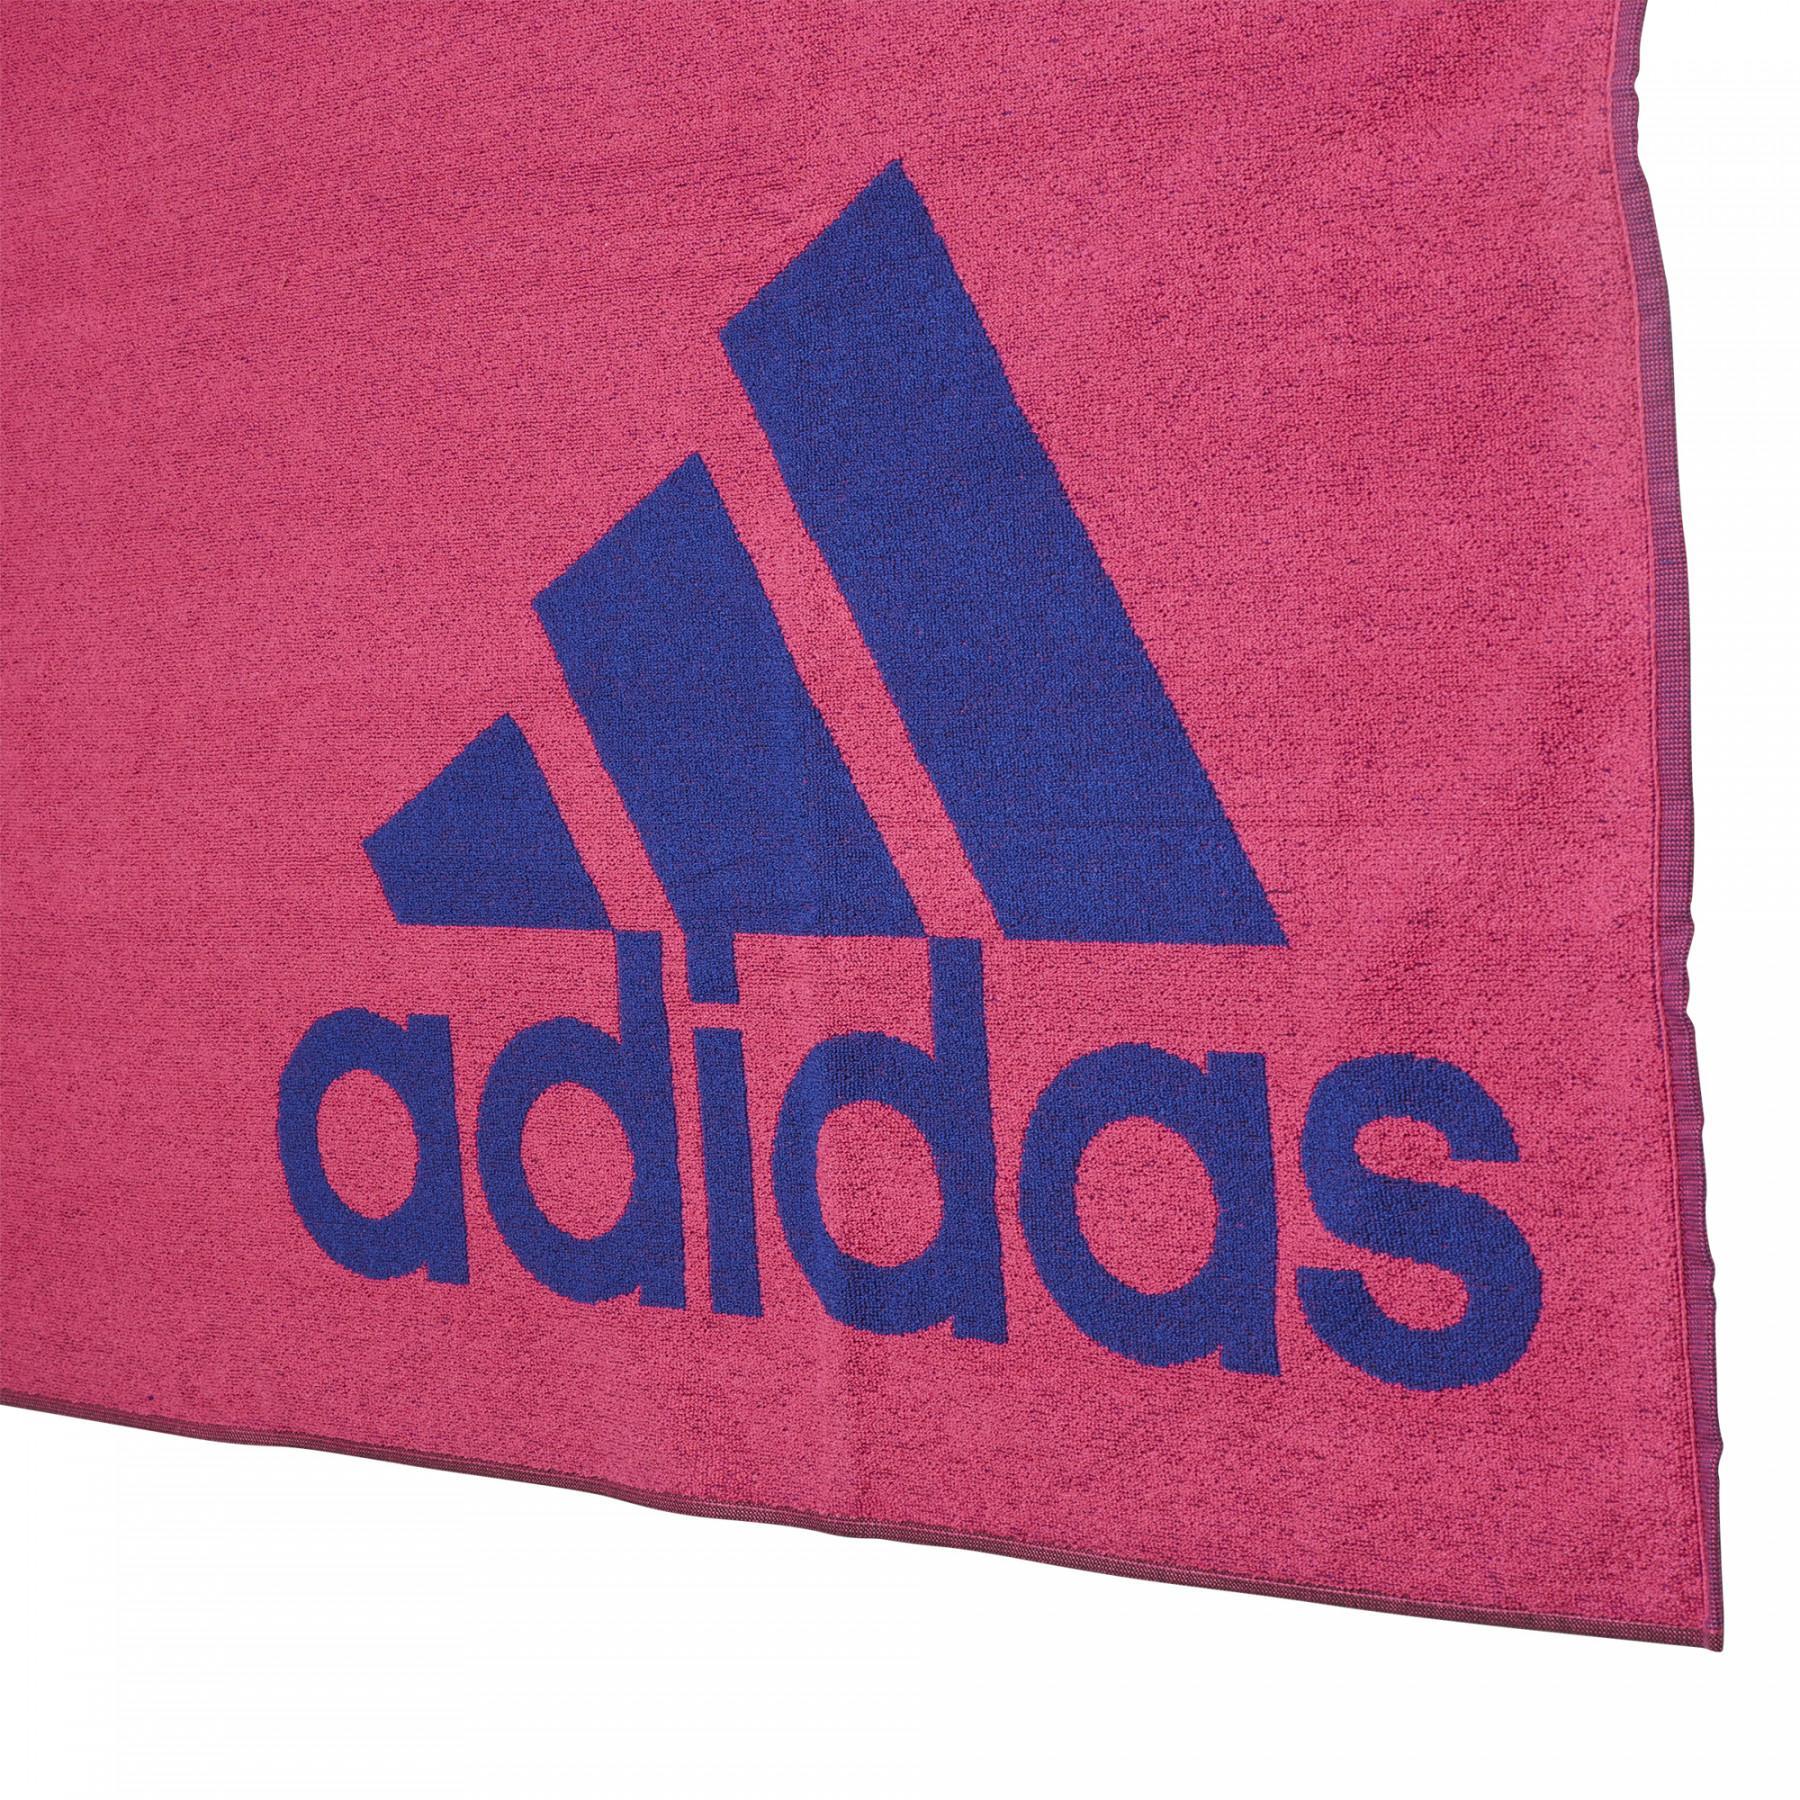 Towel adidas adidas (large size)